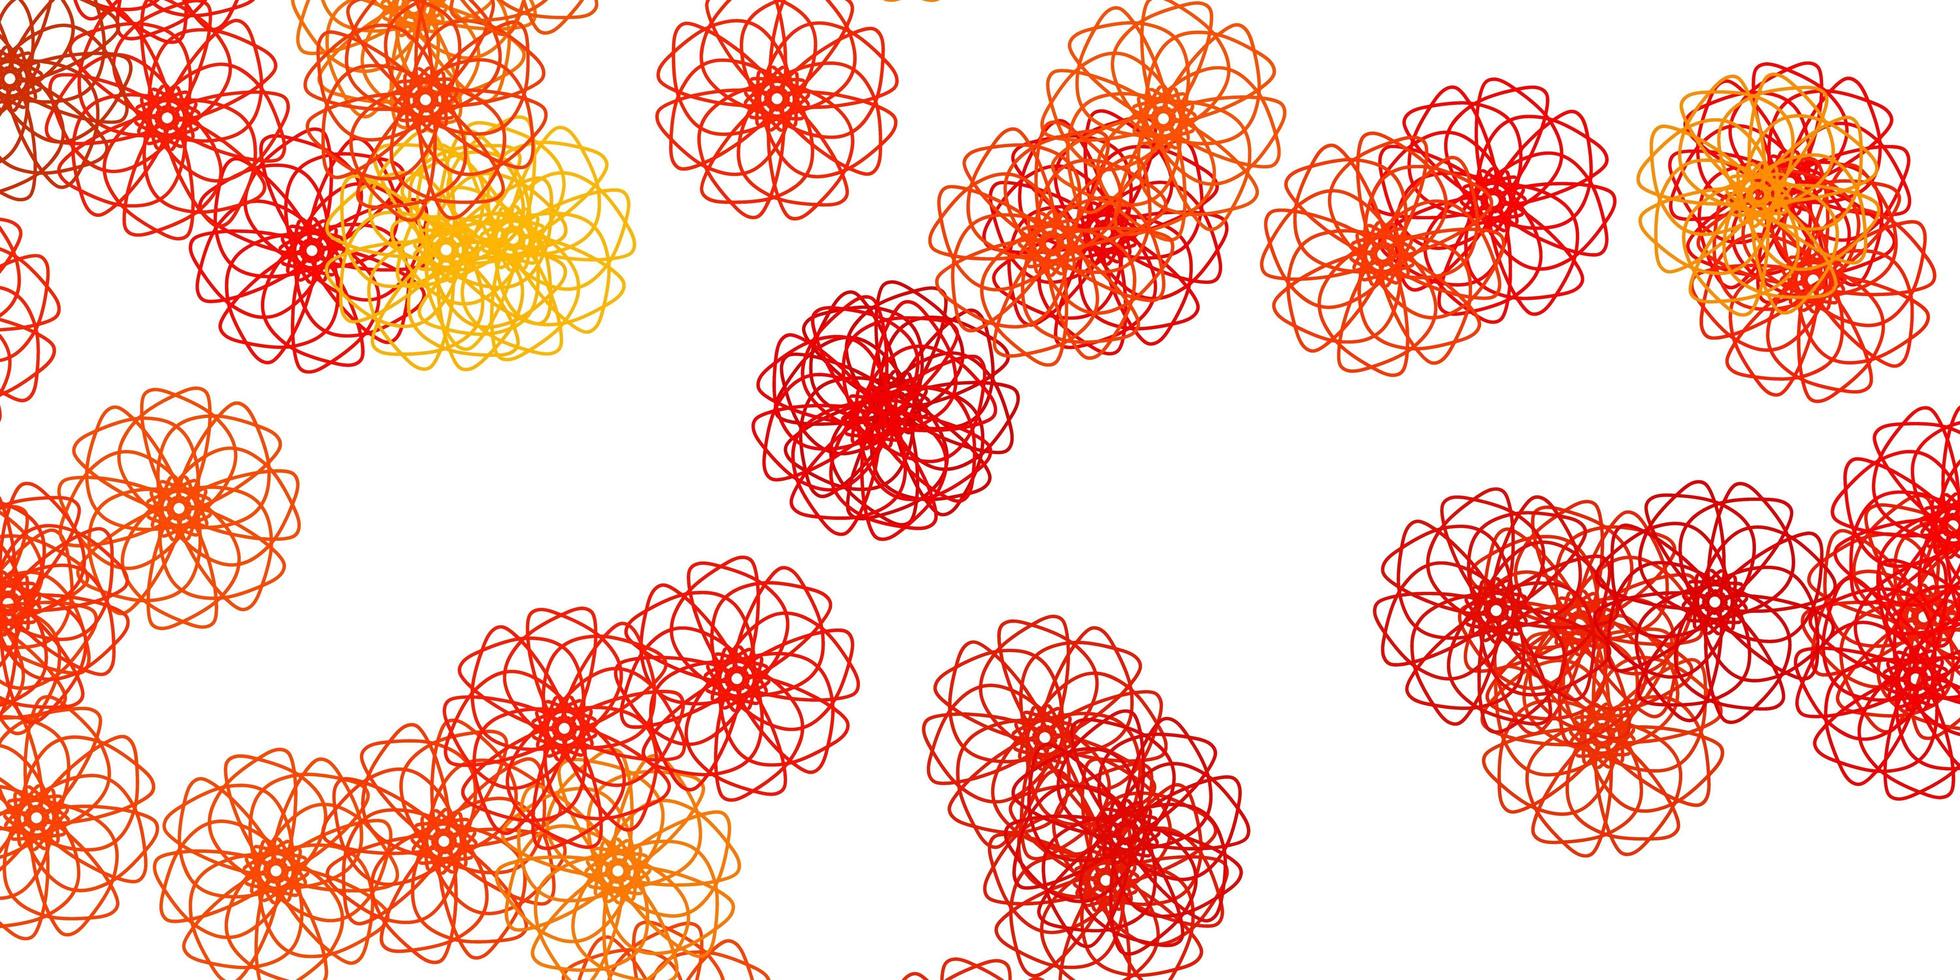 ilustraciones naturales de vector naranja claro con flores.